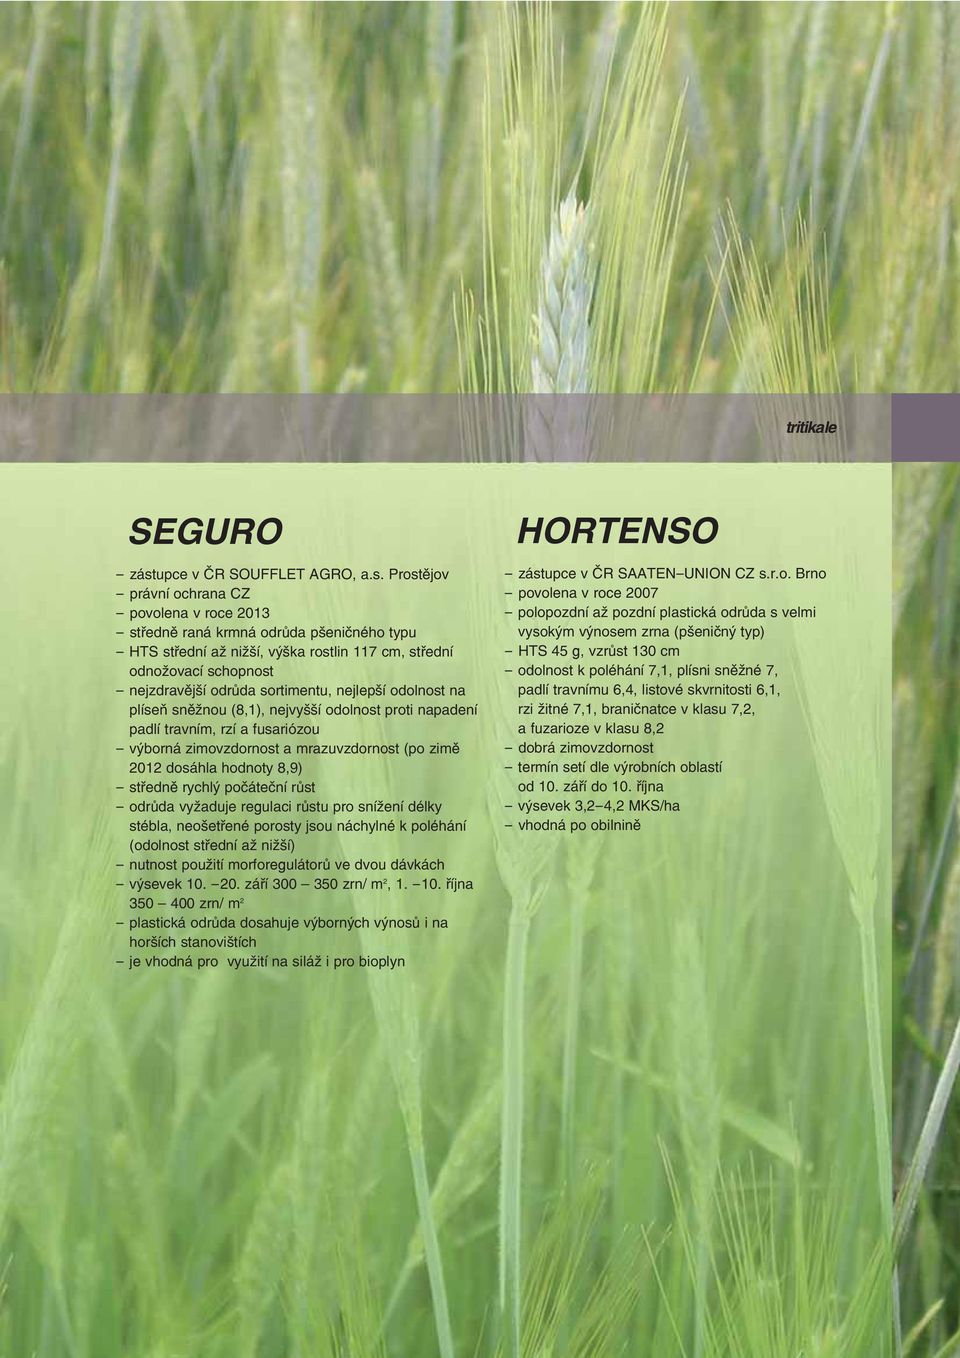 Prostějov - povolena v roce 2013 - středně raná krmná odrůda pšeničného typu - HTS střední až nižší, výška rostlin 117 cm, střední odnožovací schopnost - nejzdravější odrůda sortimentu, nejlepší